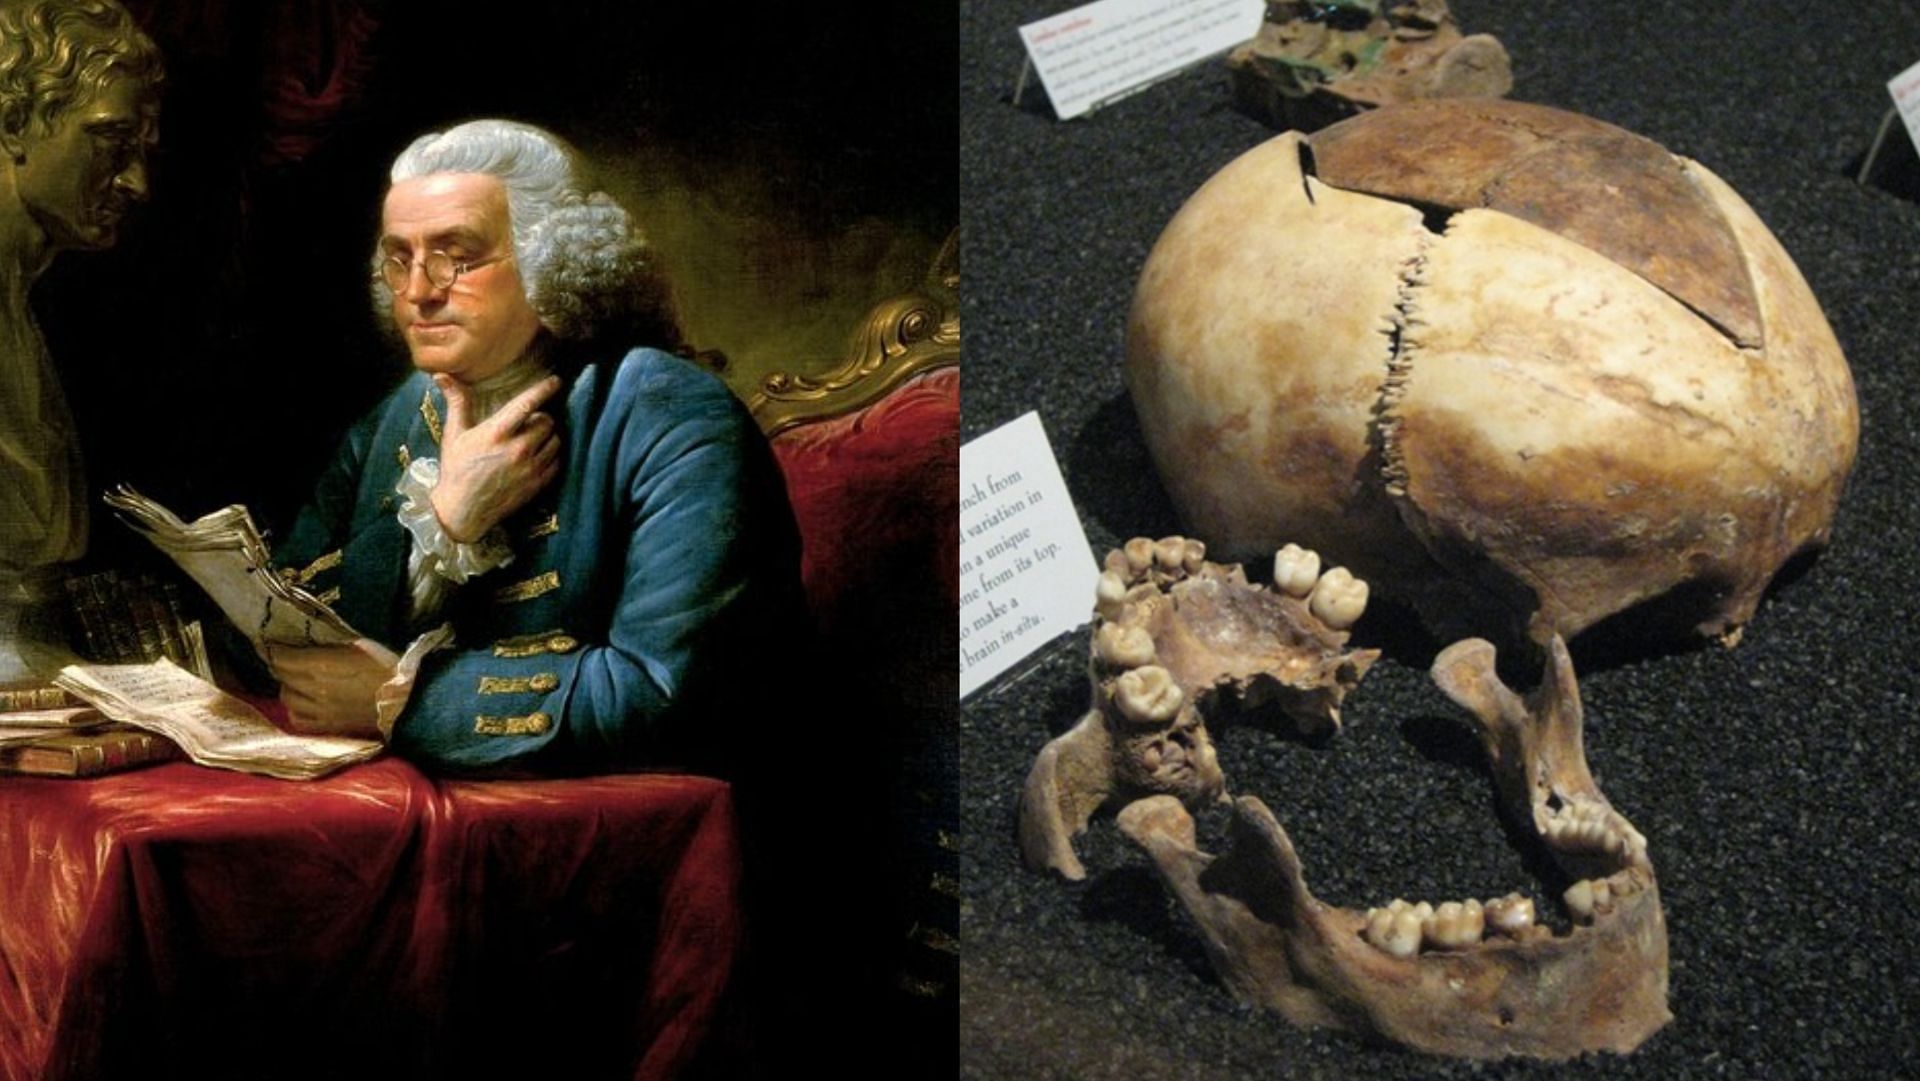 In 1998, more than 1200 bones were found at Ben Franklin